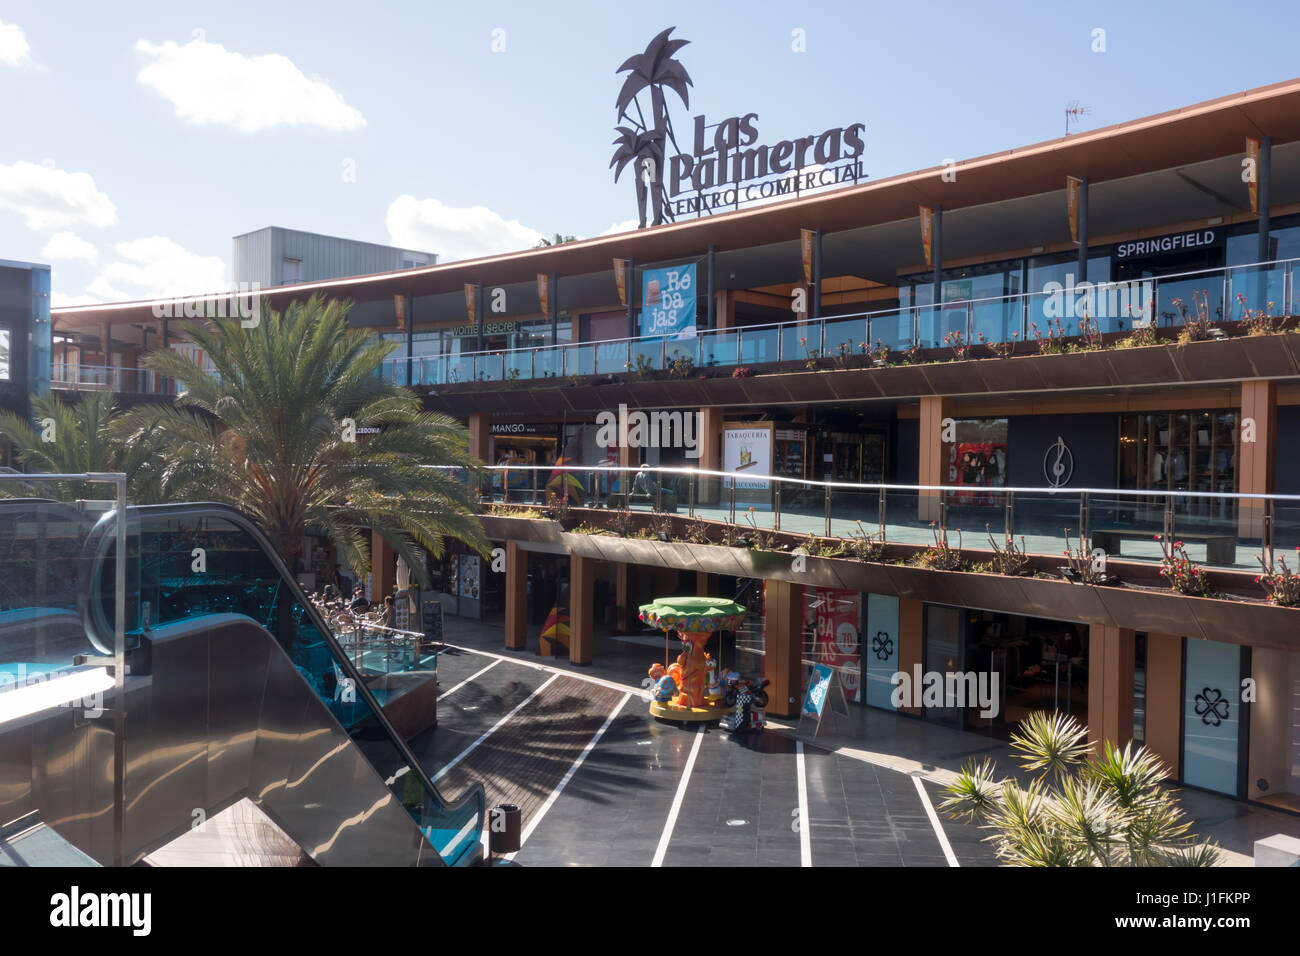 Centro Comercial Las Palmeras Shopping Centre in Corralejo, Fuerteventura, Las Palmas. Stock Photo